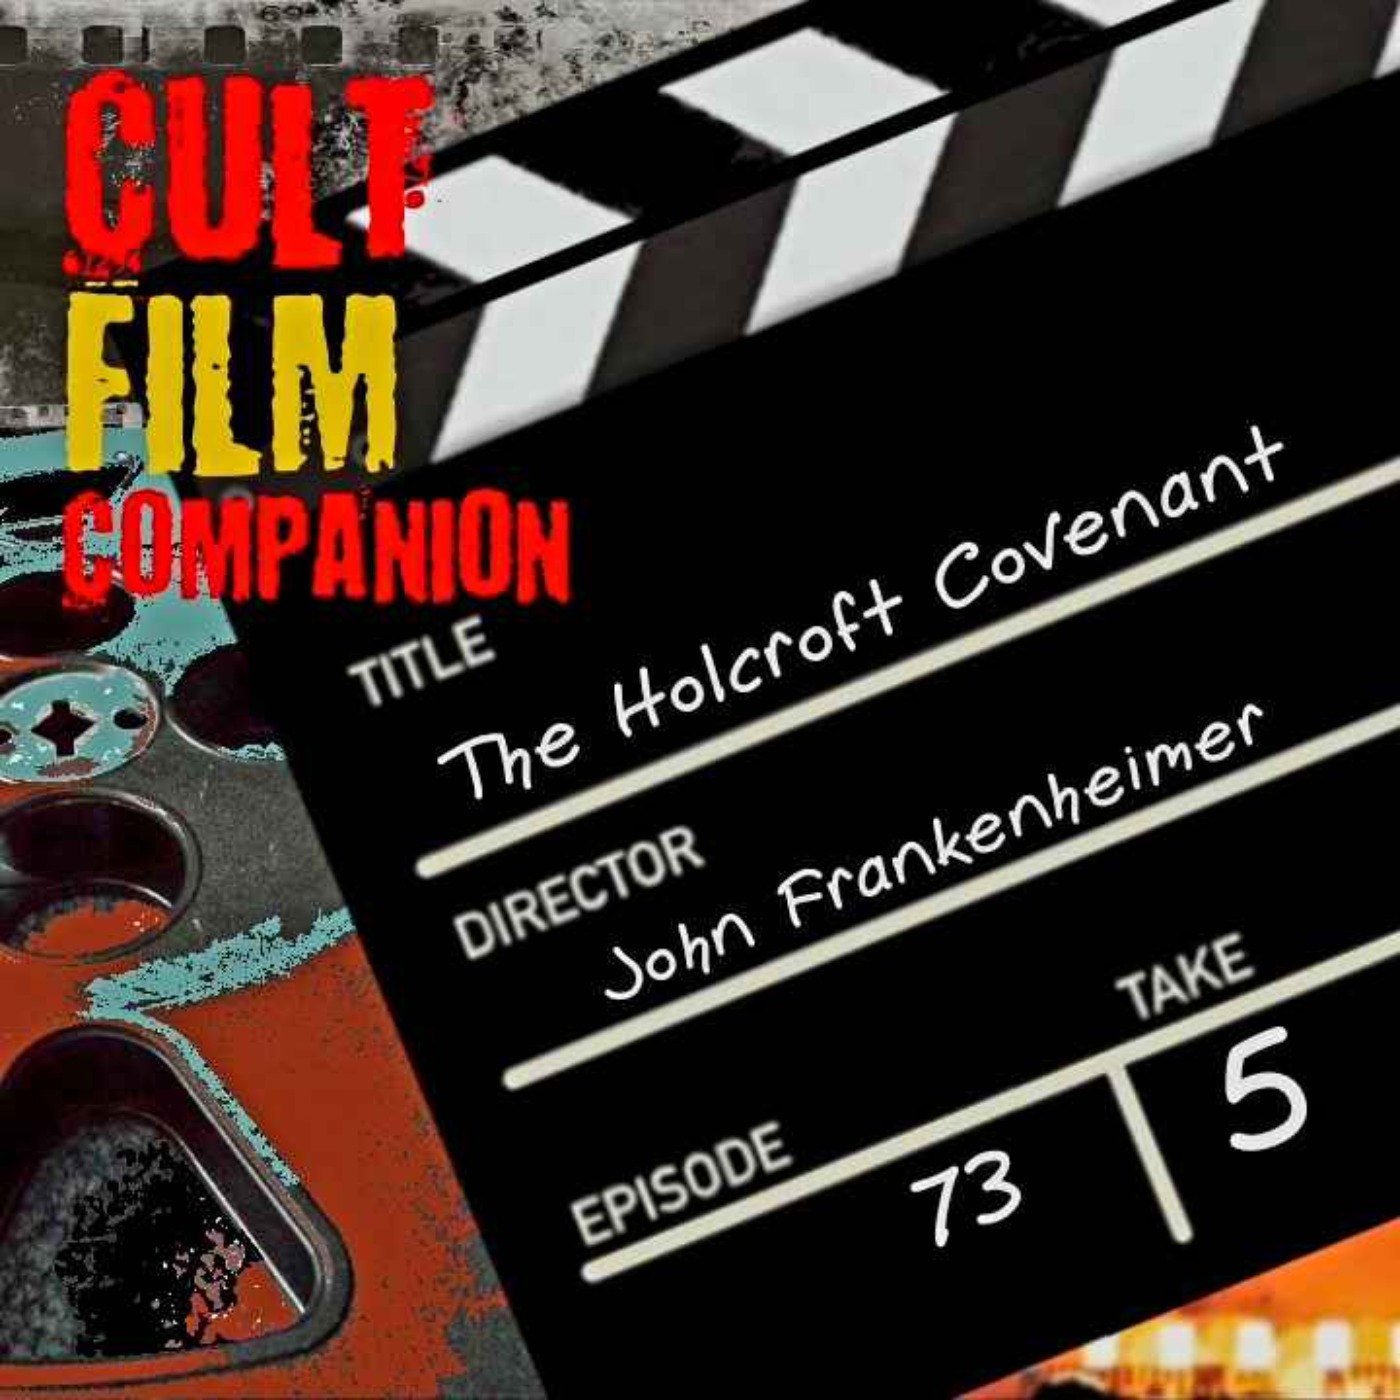 Ep. 73 The Holcroft Covenant directed by John Frankenheimer